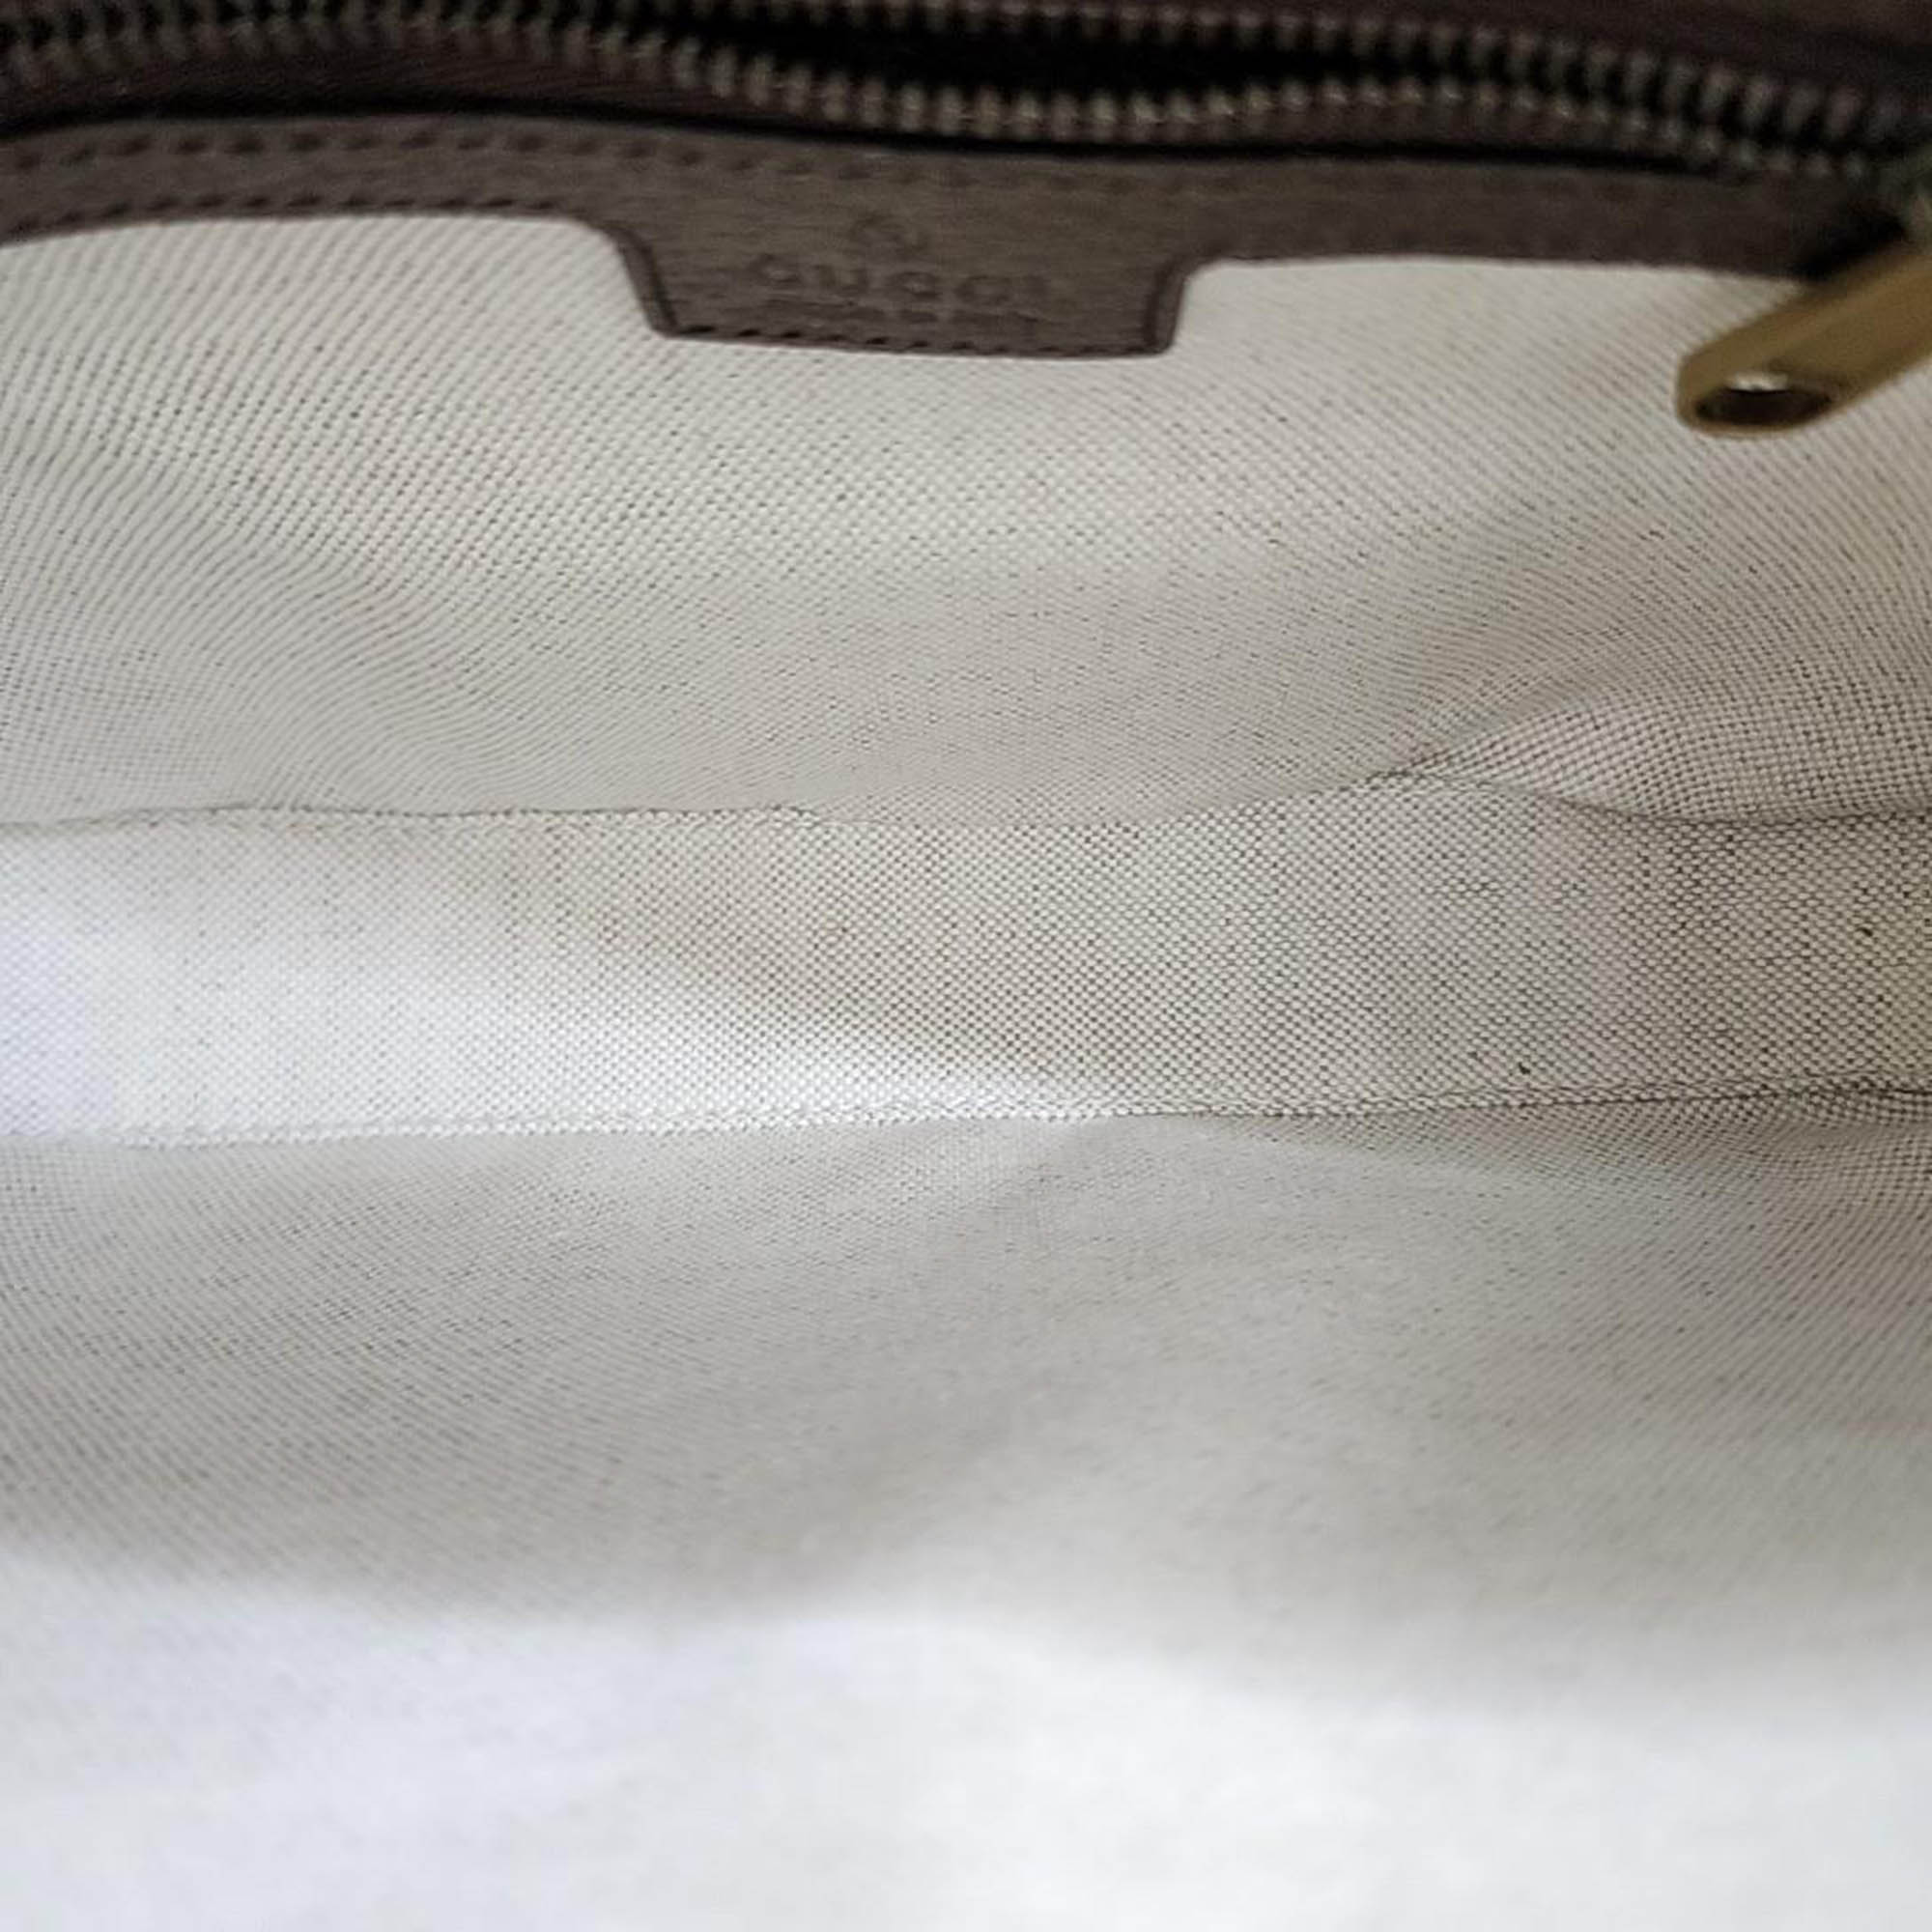 Gucci Ophidia GG Shoulder Bag (699439)